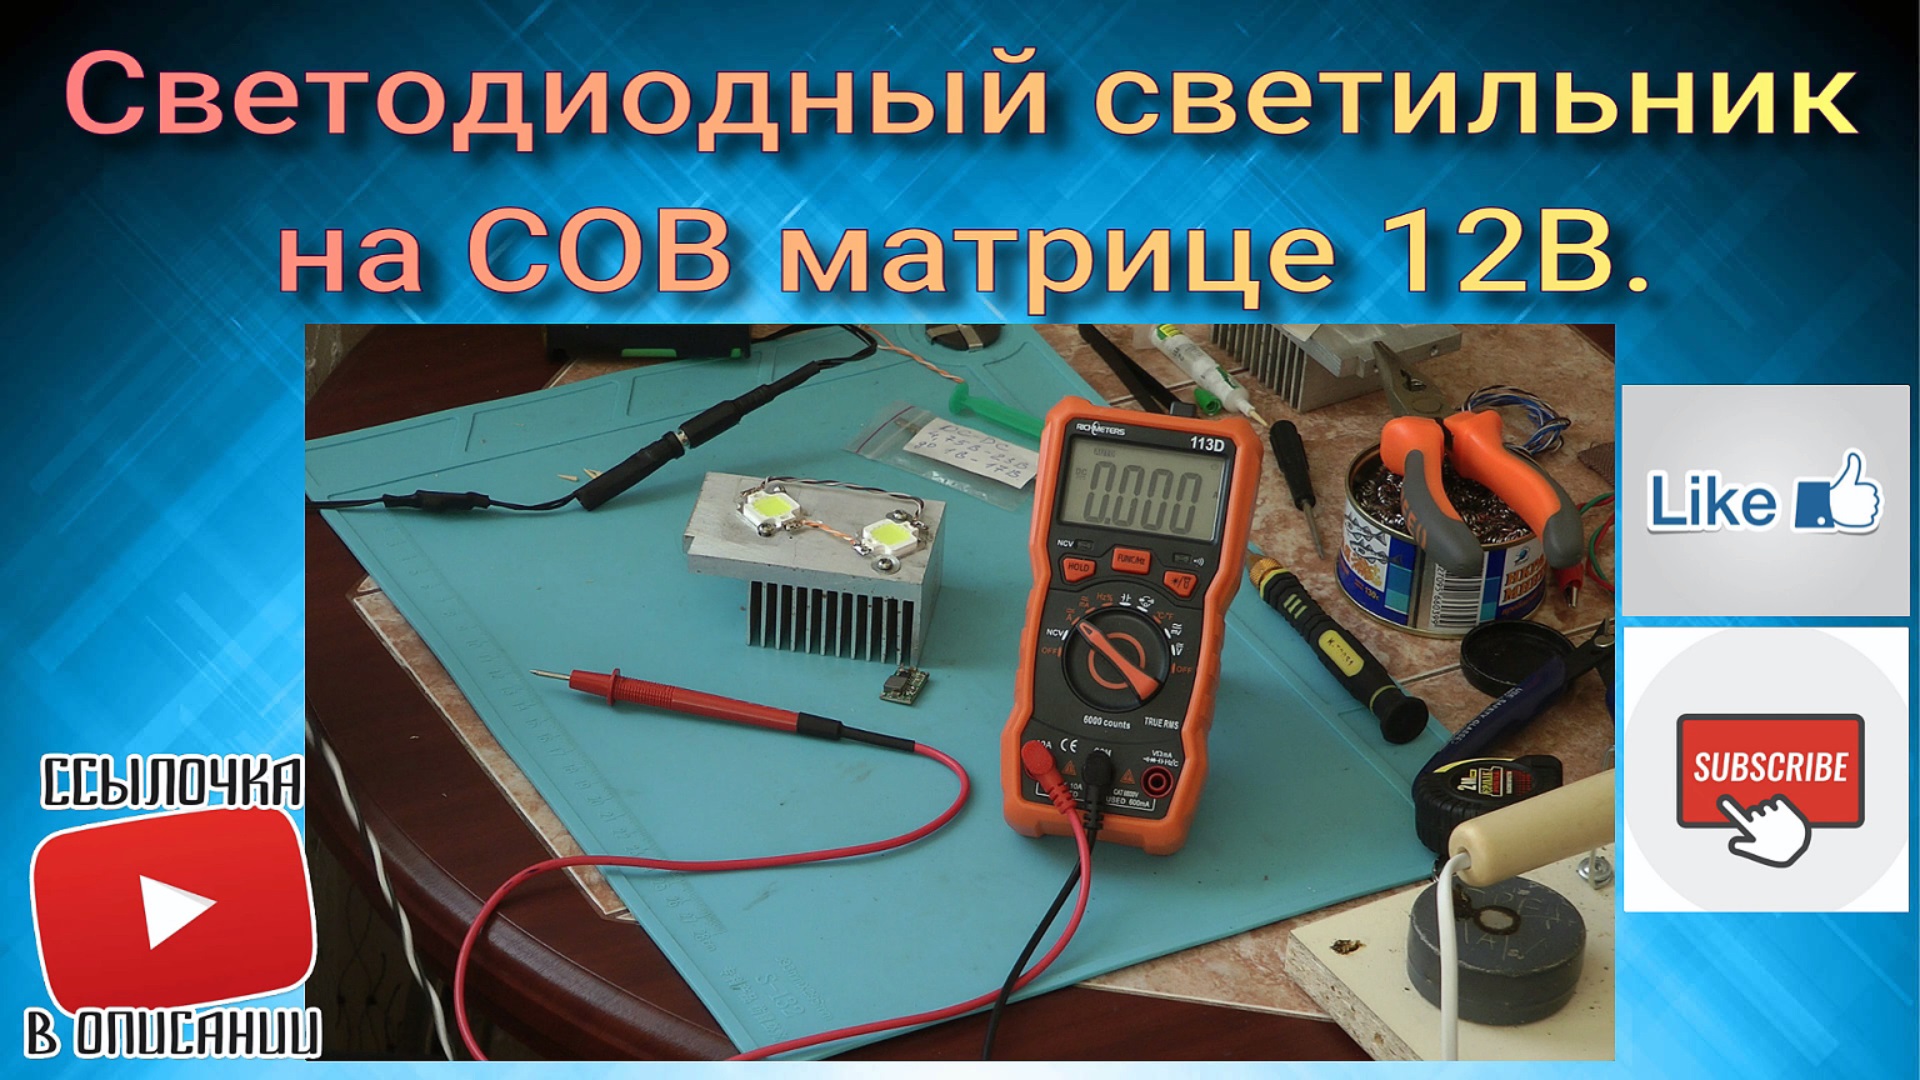 Светодиодный светильник на COB матрице 12В.